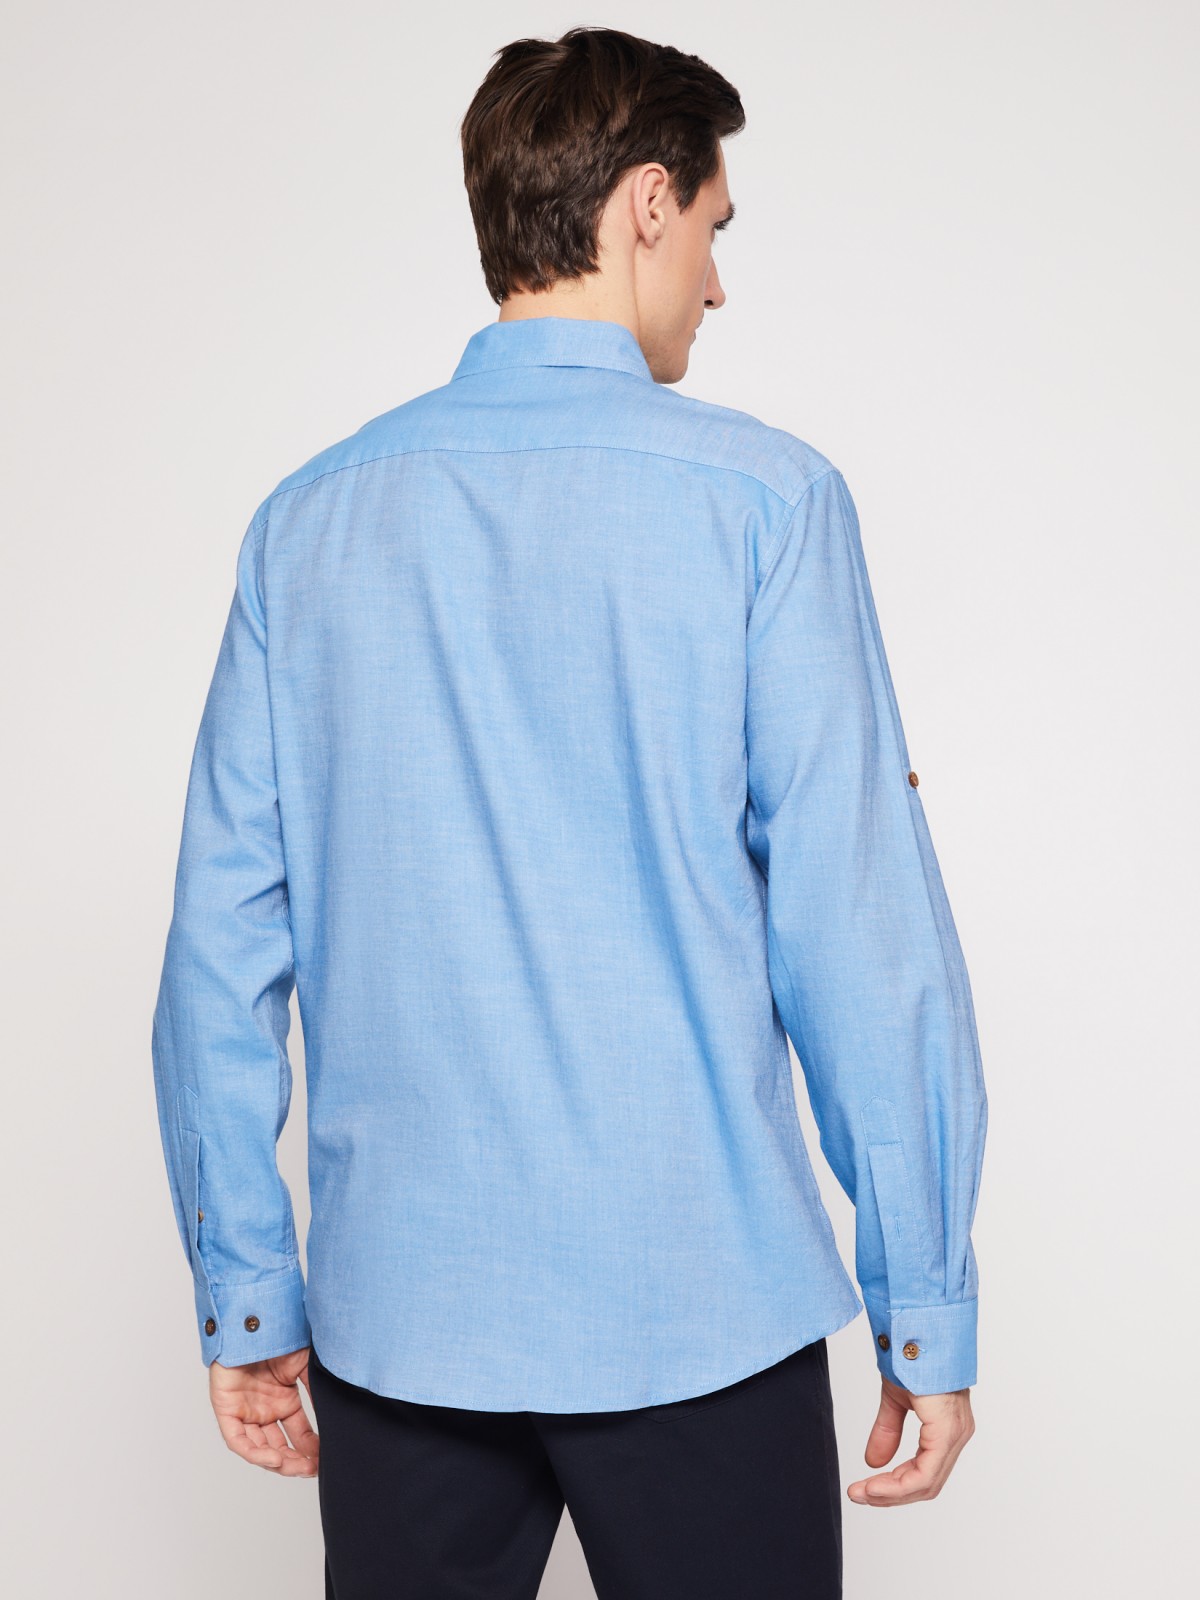 Хлопковая рубашка с длинным рукавом zolla 012122159063, цвет голубой, размер M - фото 6